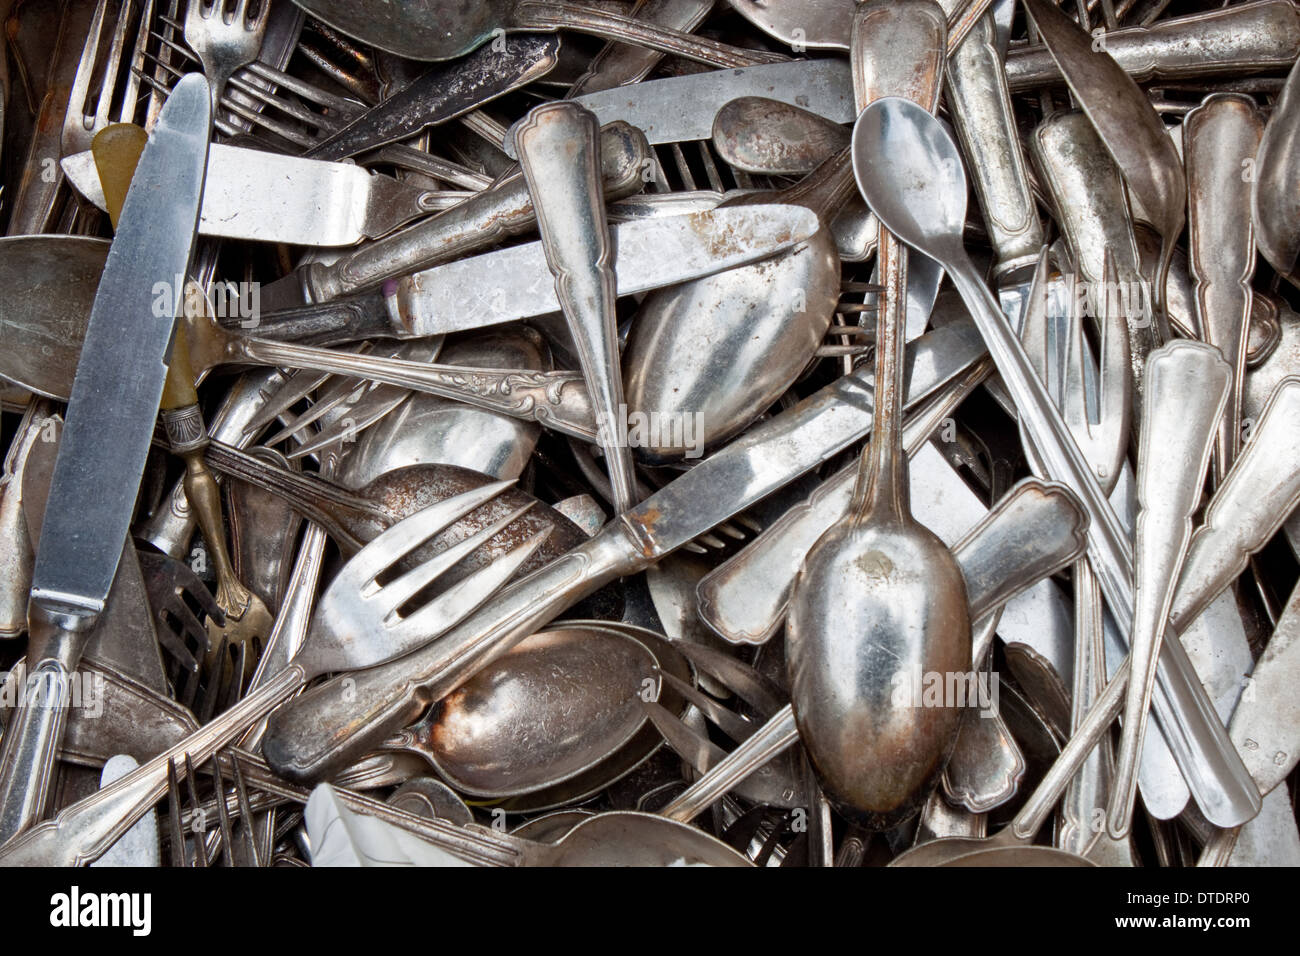 Vieilles cuillers, fourchettes, couteaux sur un marché aux puces Banque D'Images